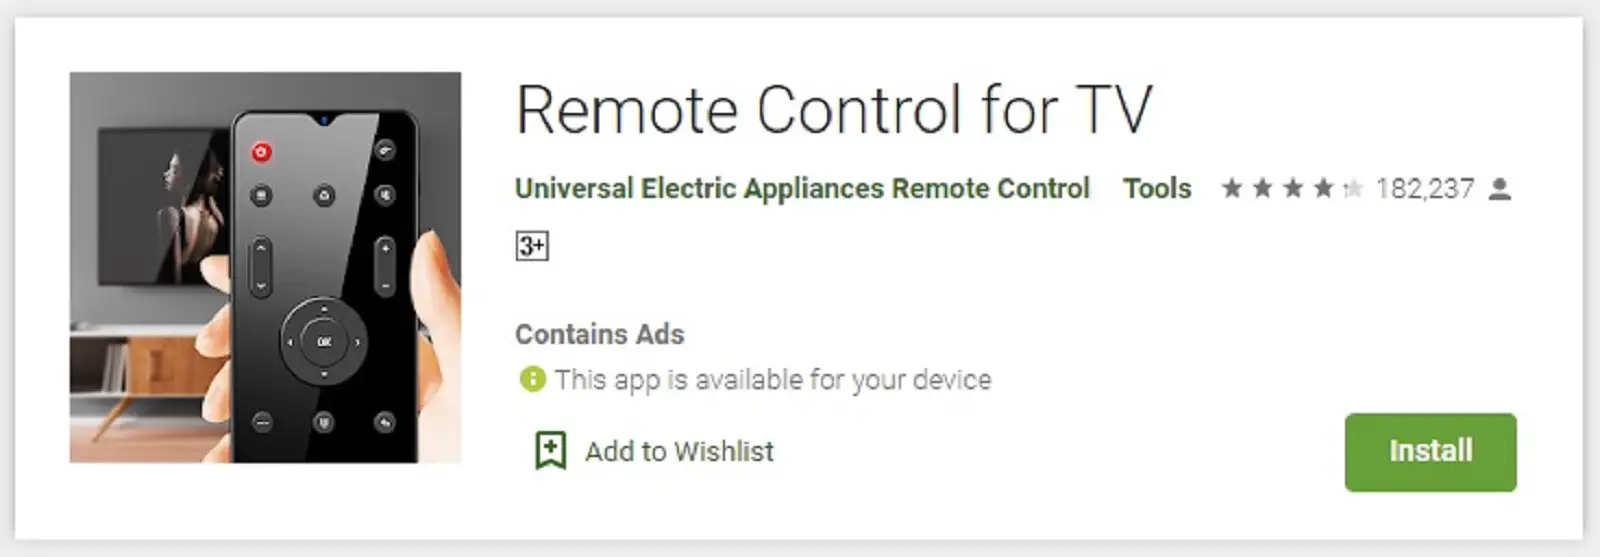 Remote Control for TV, Aplikasi Remote TV Tabung Bisa Semua Merk